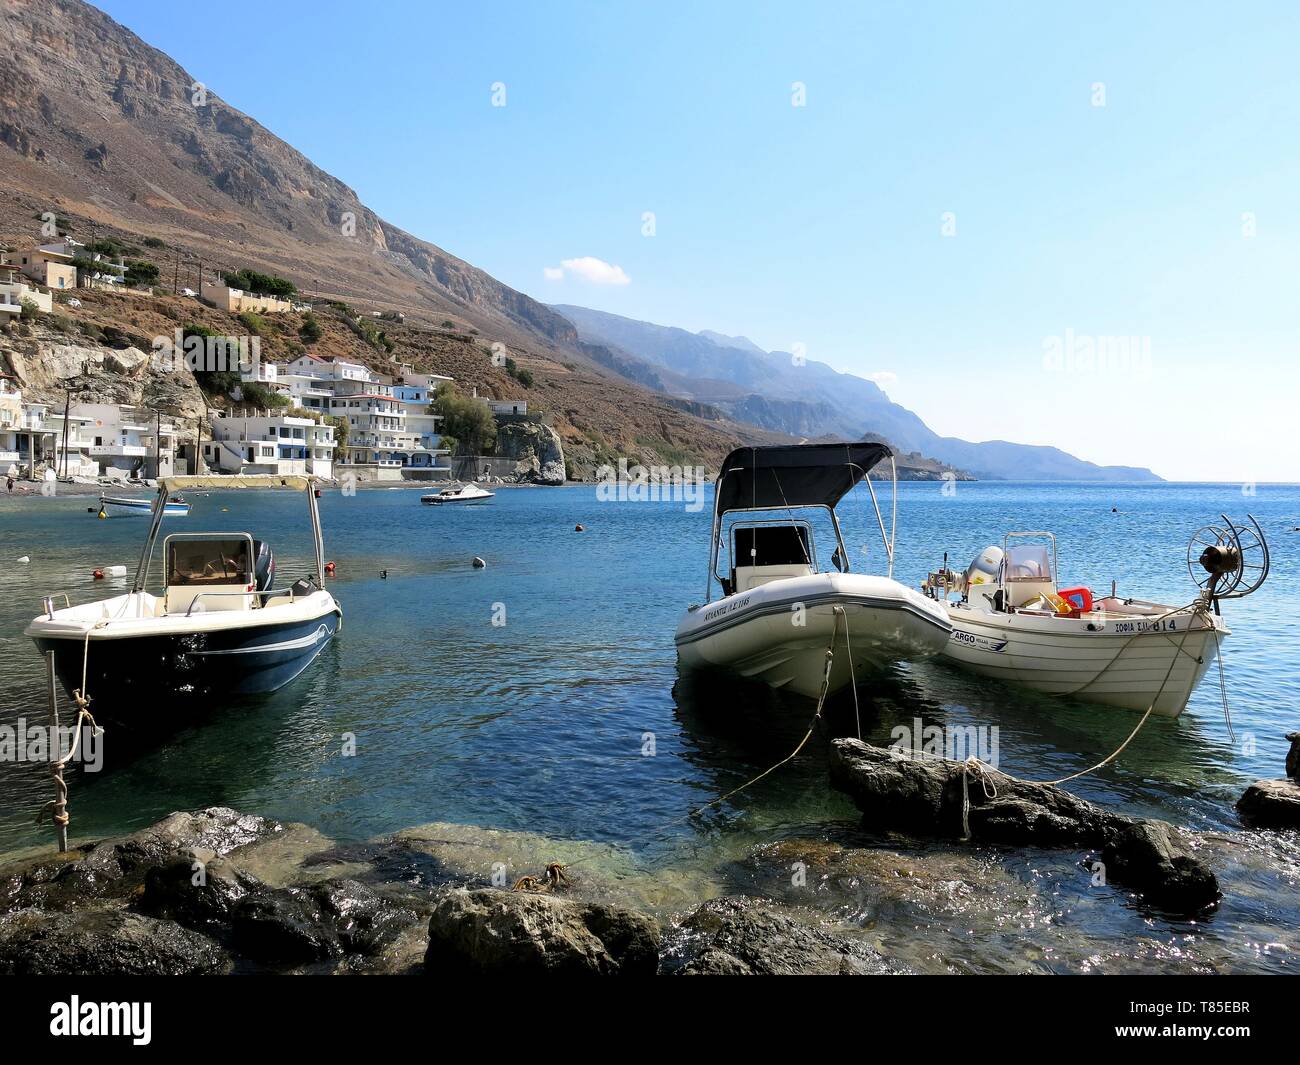 3 Ekklisies, kleines Fischerdorf und ein Urlaubsziel für Einheimische, südliche Kreta, Griechenland. Stockfoto